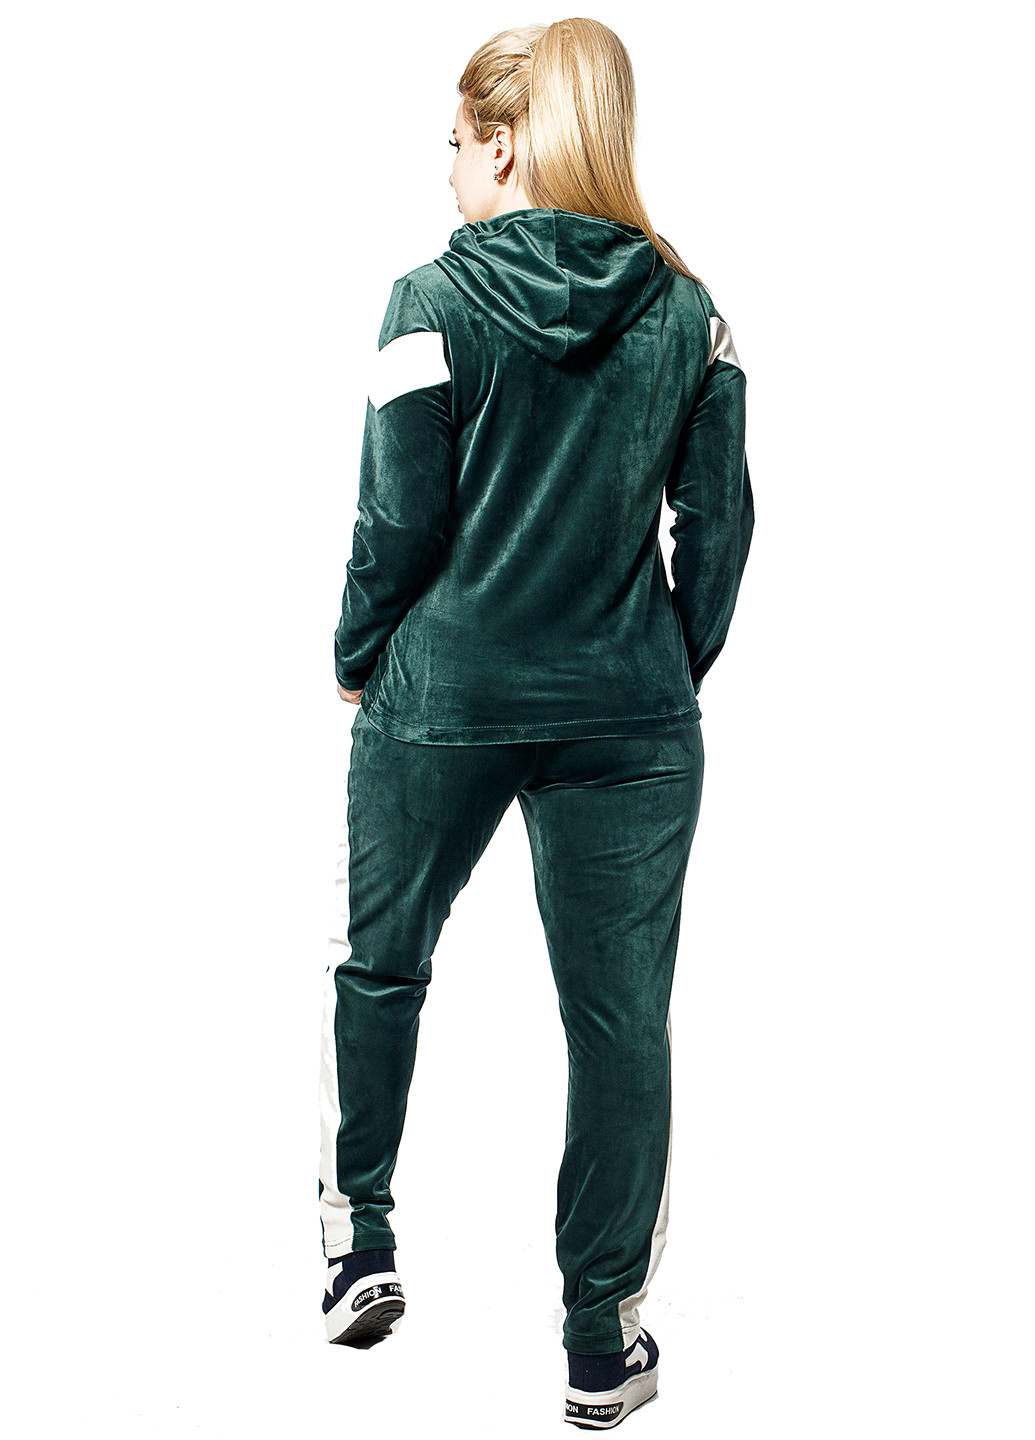 Костюм (худи, брюки) Primyana брючный полоска бутылочный зеленый спортивный